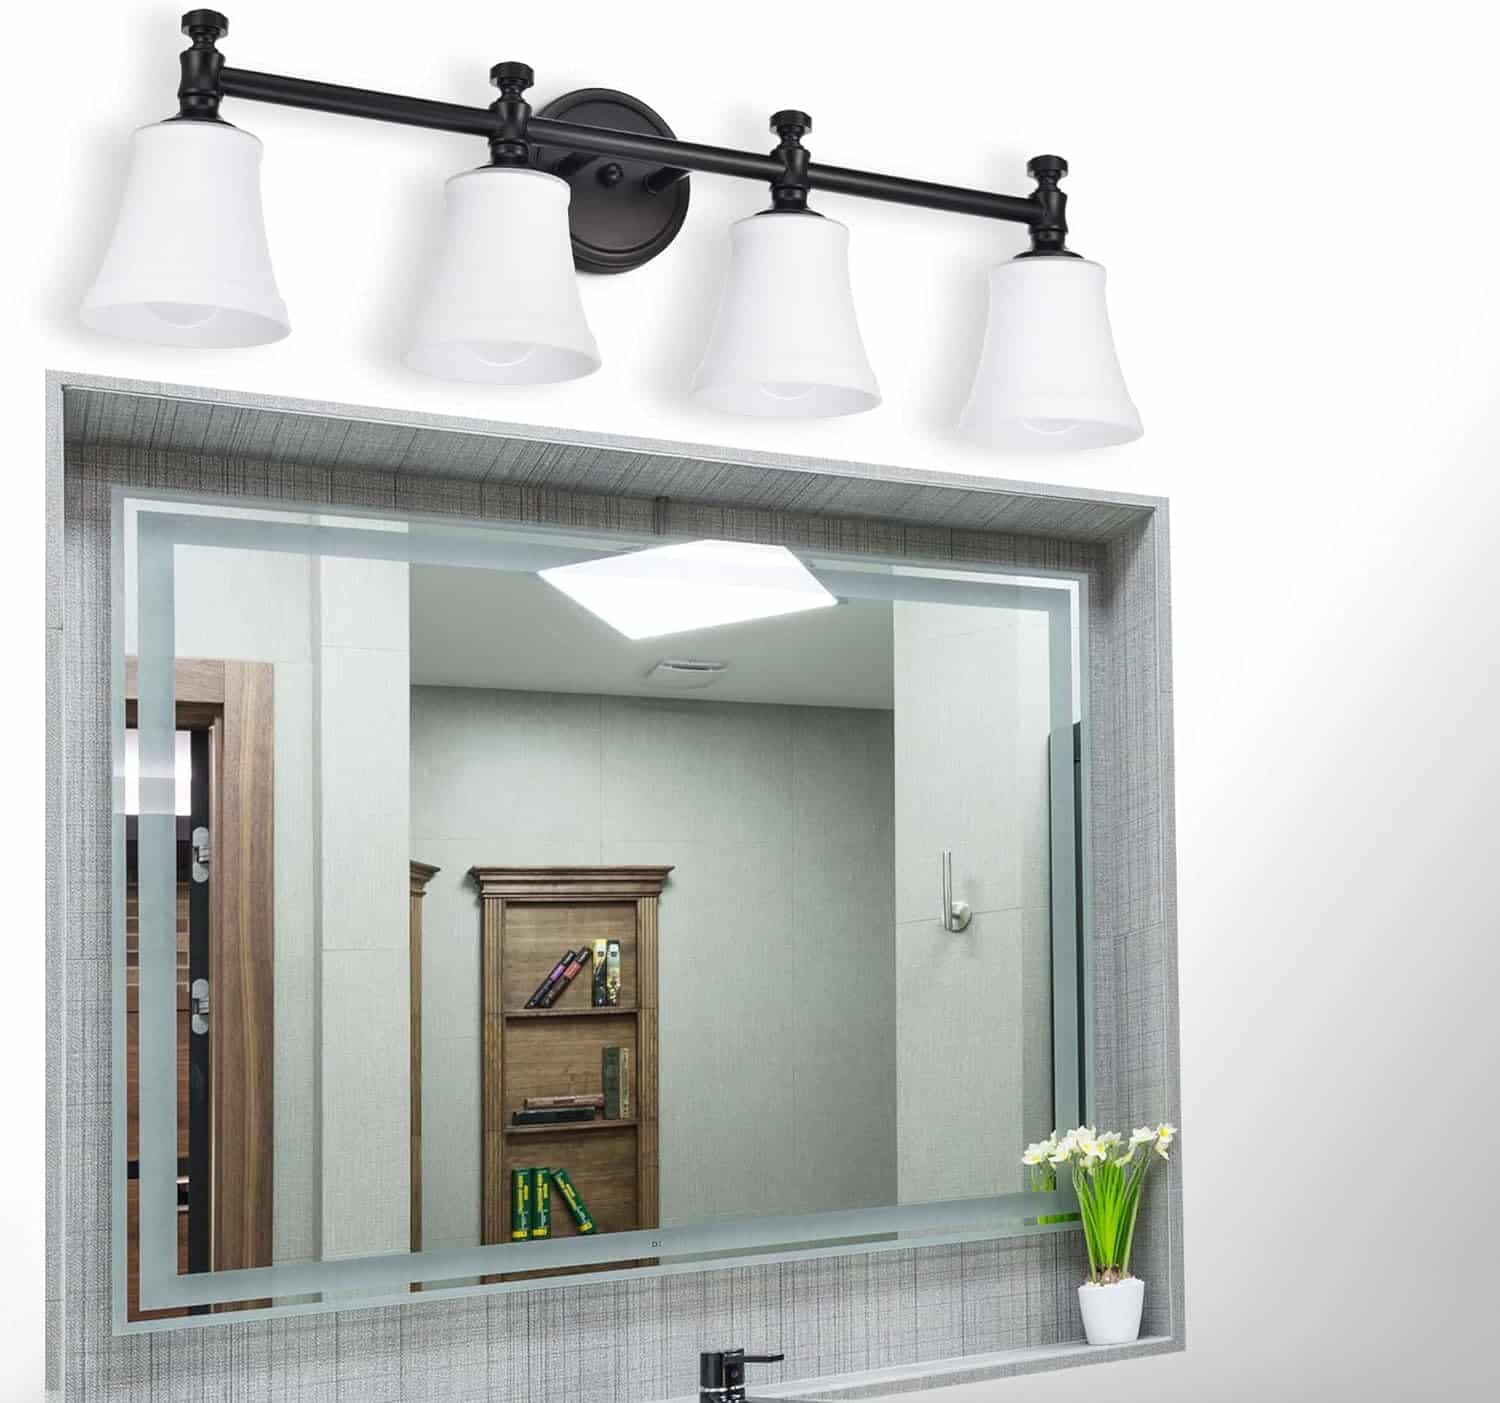 Hanaloa Bathroom Vanity Light Fixtures Review